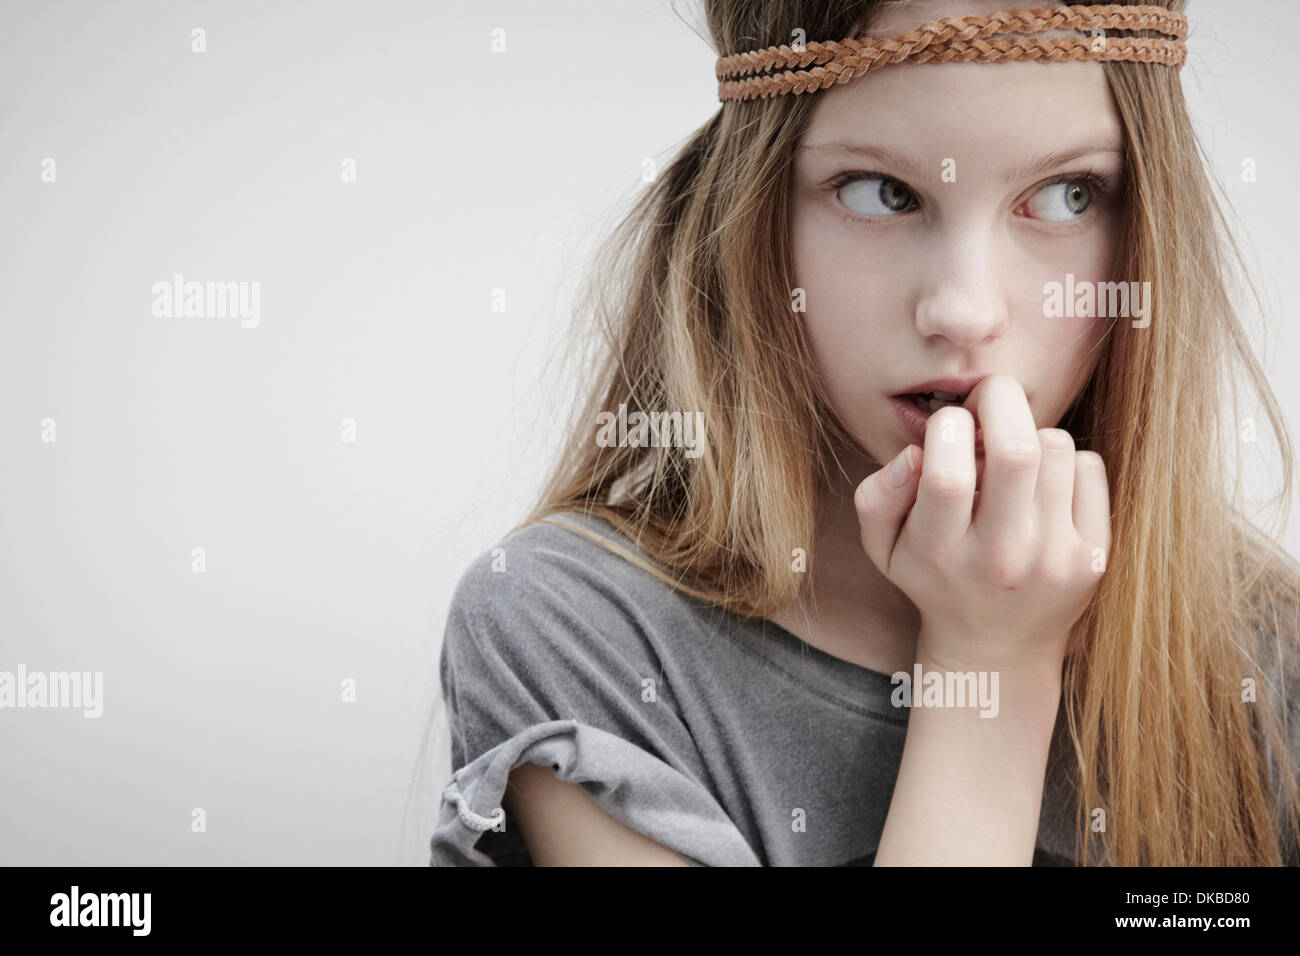 Ritratto di una ragazza che indossa la treccia in pelle attorno alla testa, tenendo giù, il dito in bocca Foto Stock